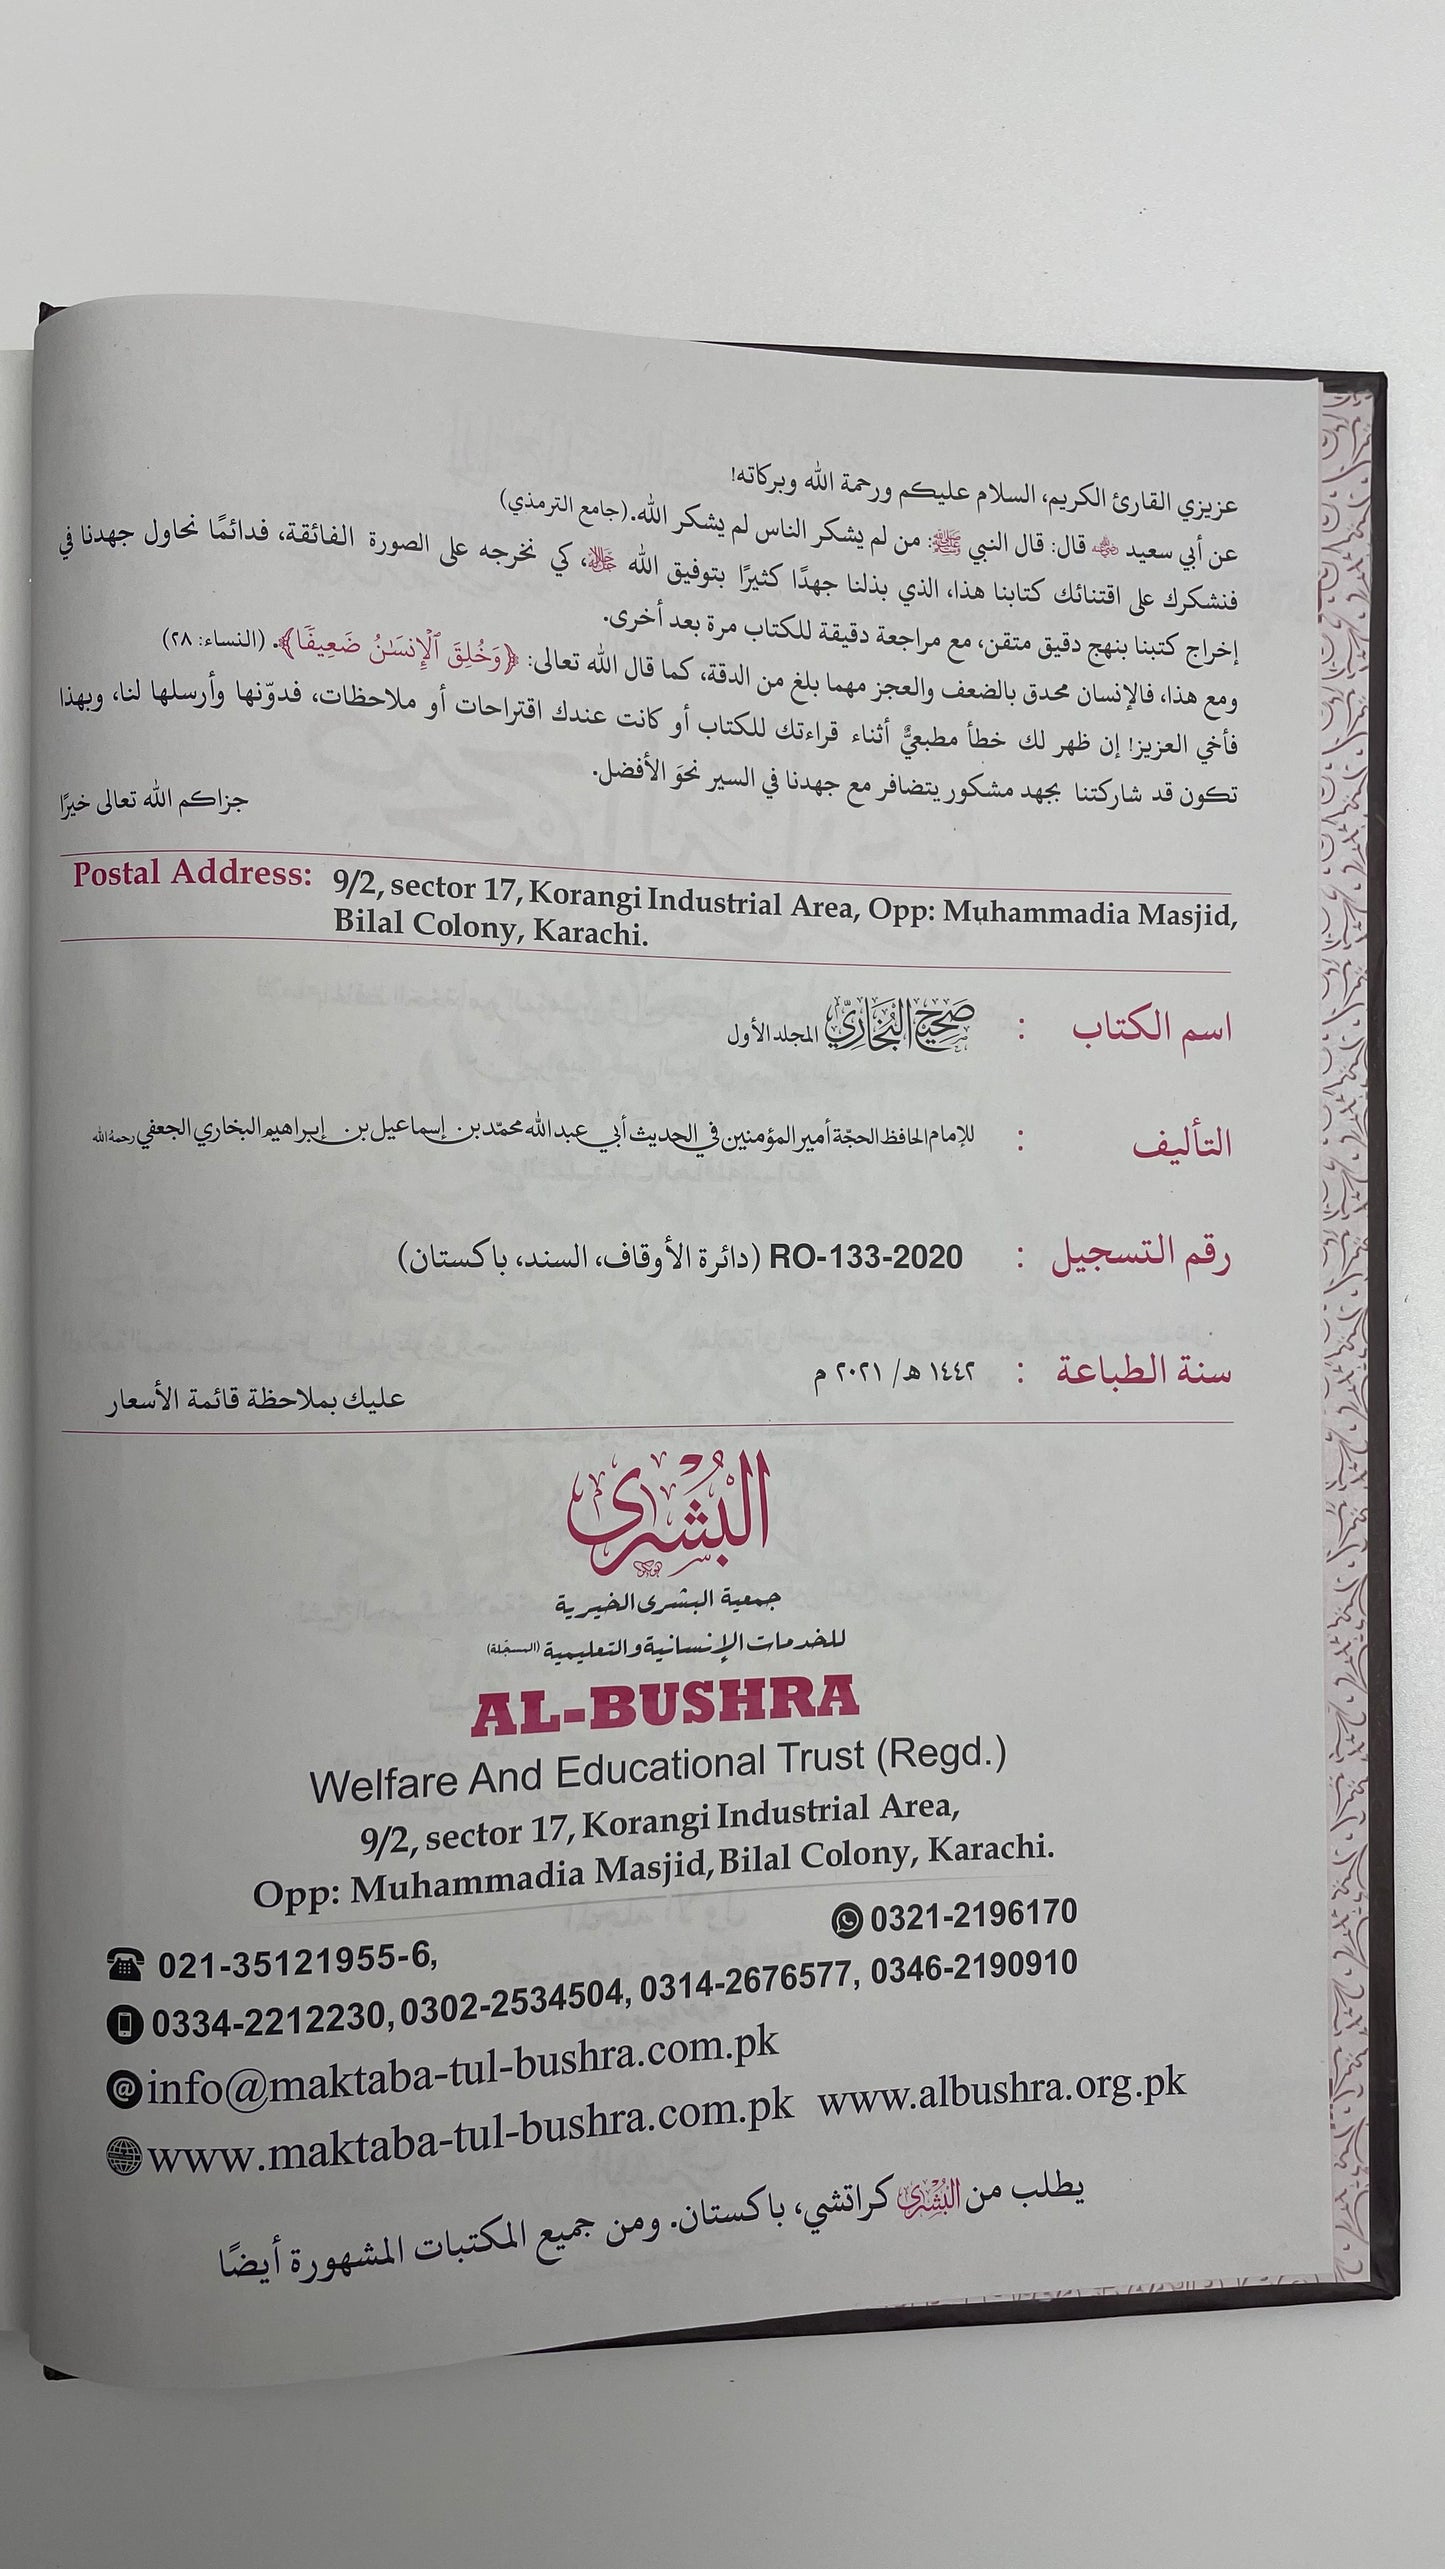 Sahih Al Bukhari 2021 Edition - صحيح البخاري